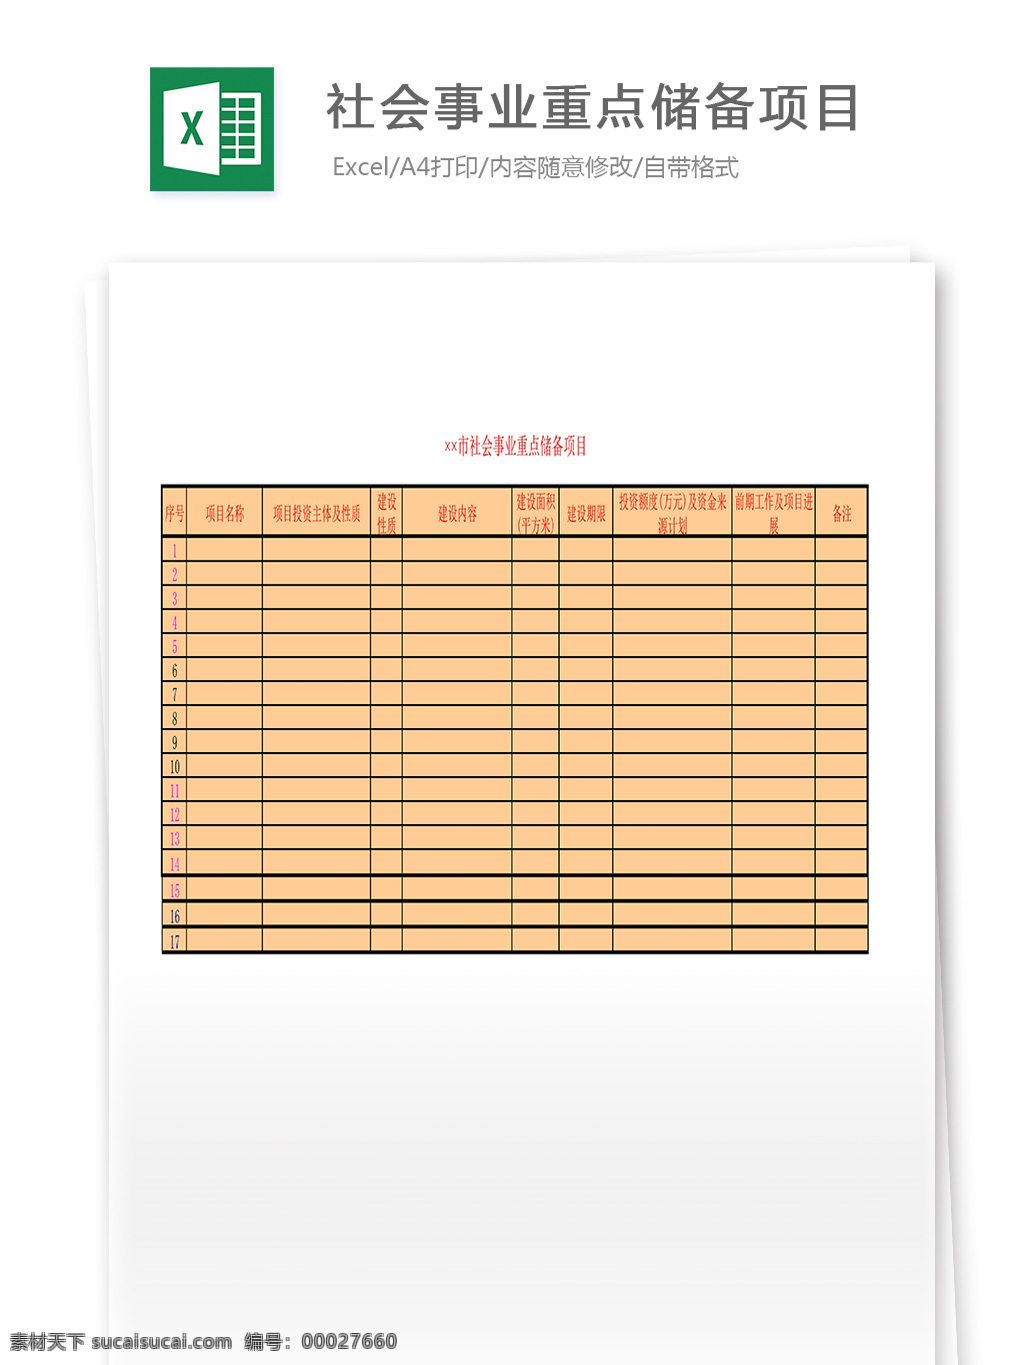 社会事业 重点 储备 项目 表格 表格模板 表格设计 图表 储备项目